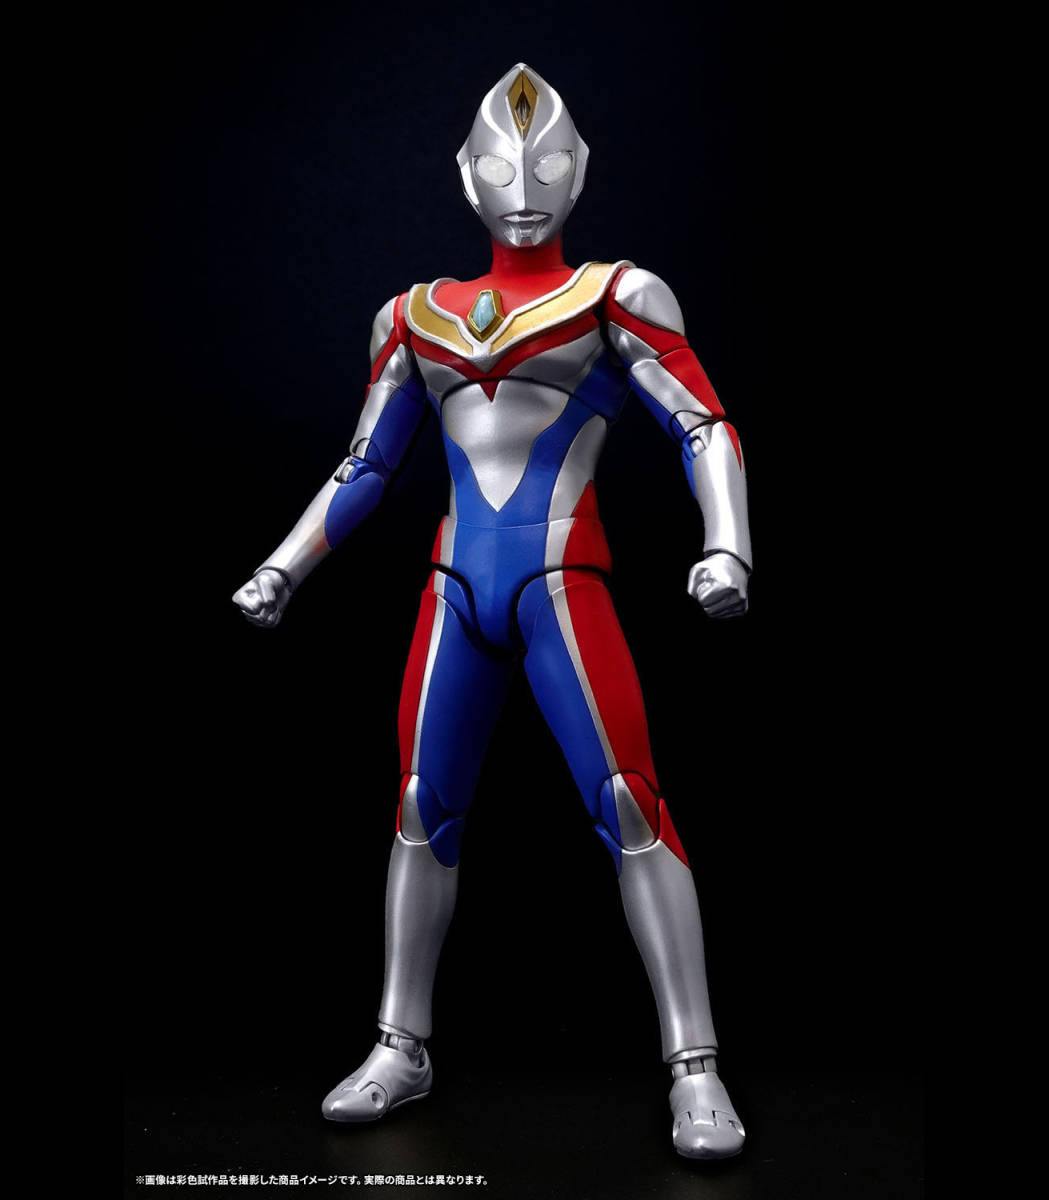 S.H.Figuarts подлинный . гравюра производства закон Ultraman Dyna flash модель душа web figuarts Bandai душа web Ultraman Dyna BANDAI новый товар 